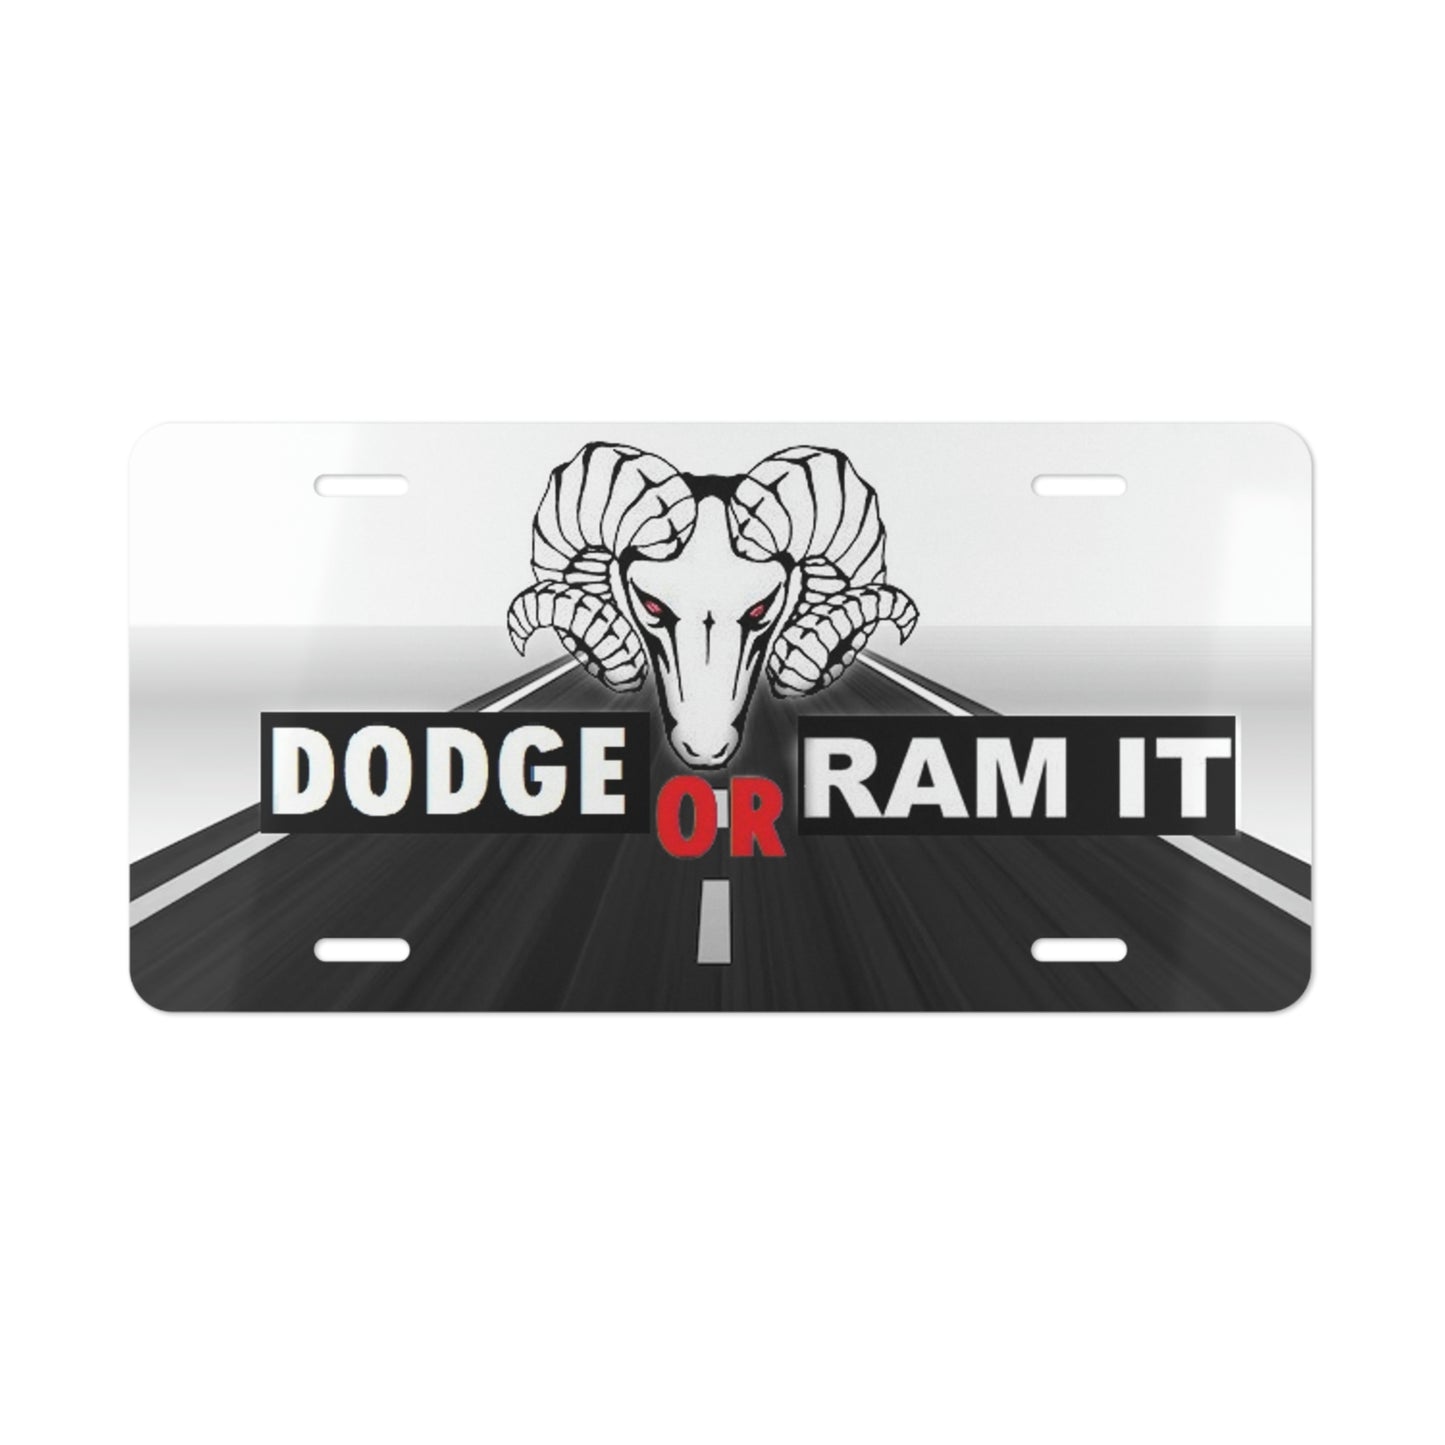 Dodge Or Ram Vanity License Plate